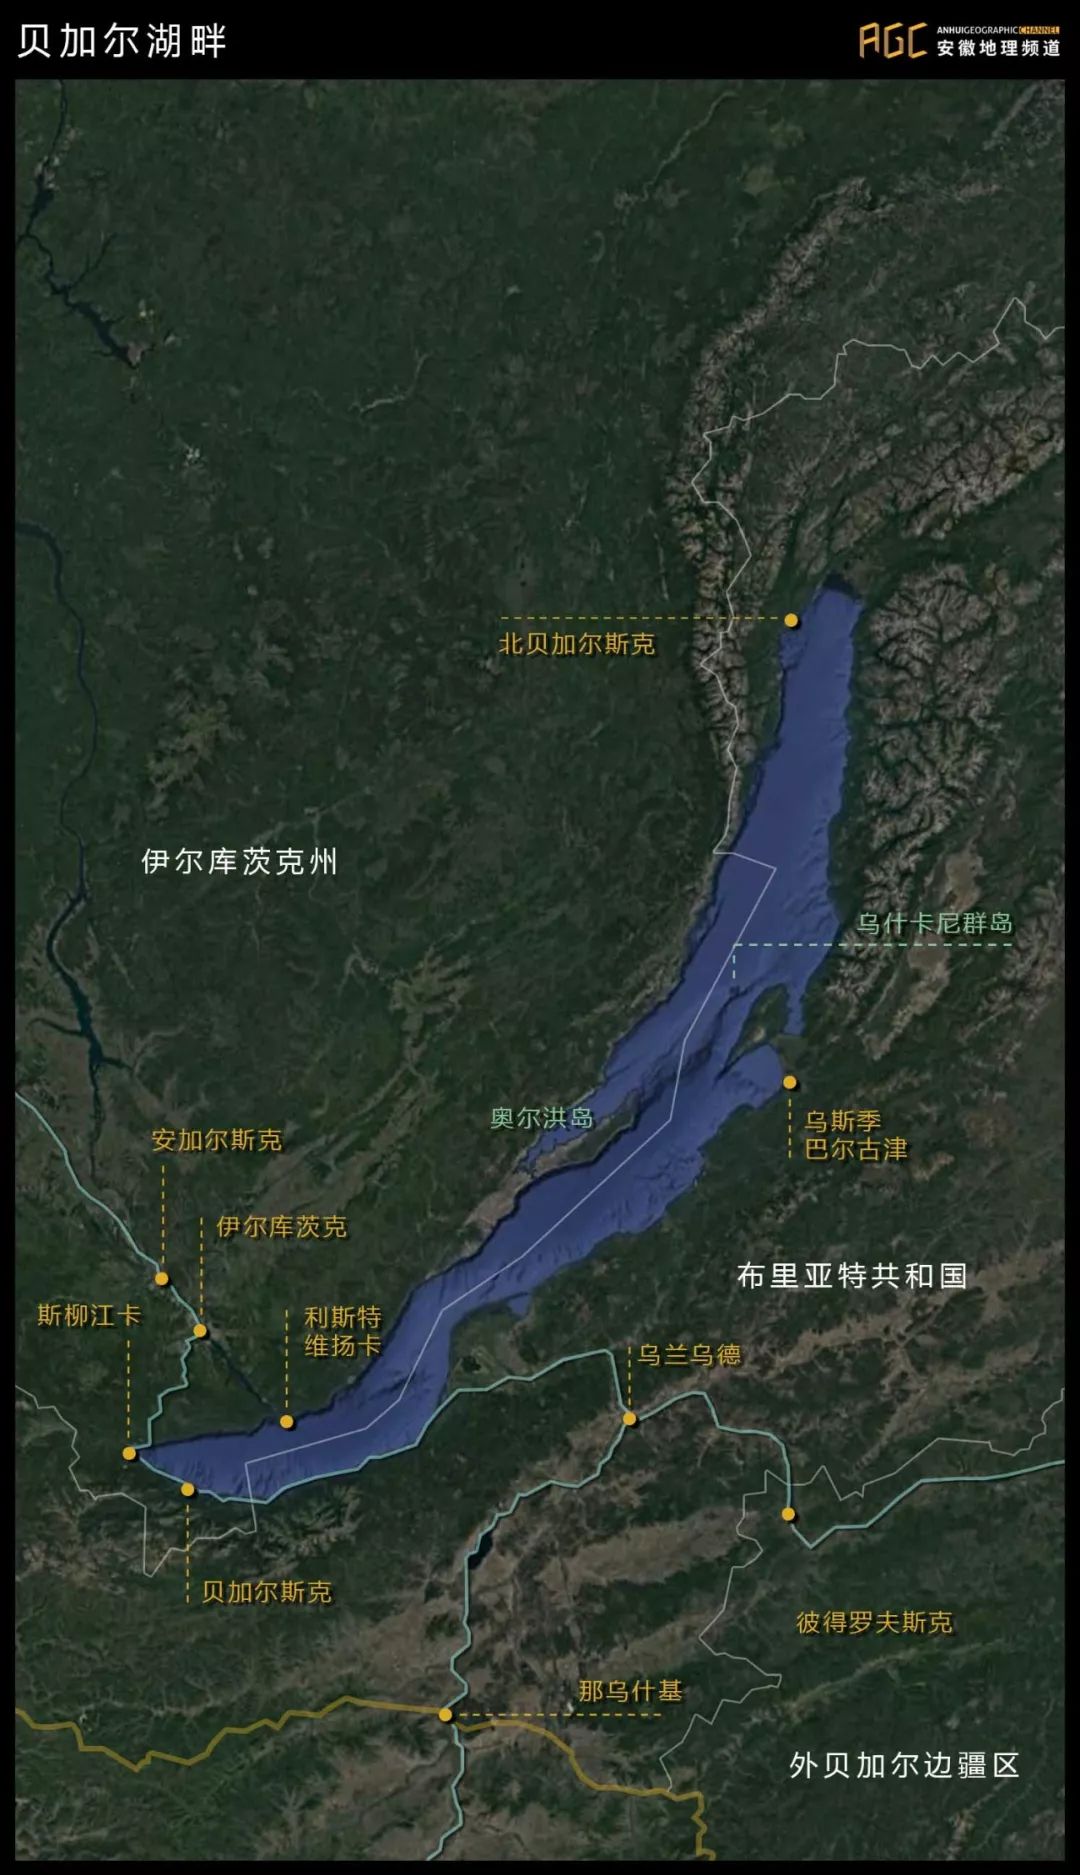 贝加尔湖地图 丨图片由安徽地理频道绘制这么大的湖泊,自然不是